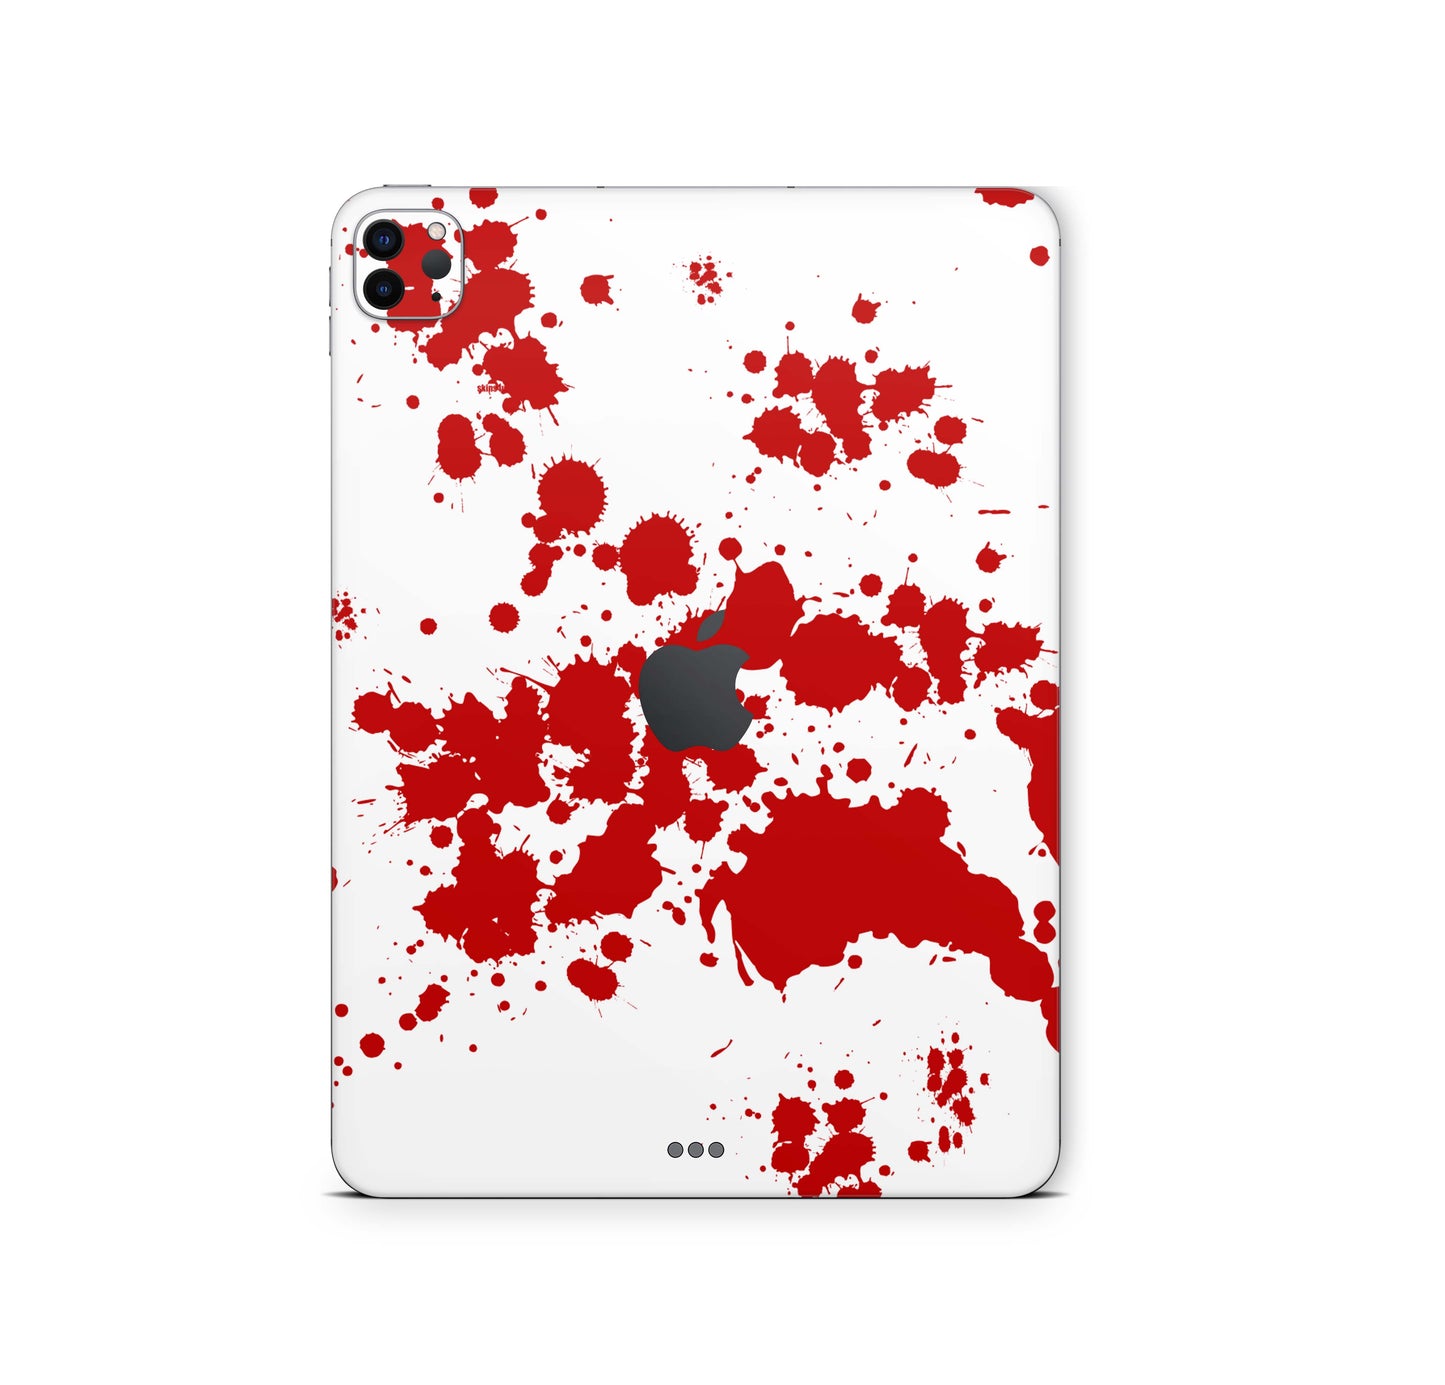 iPad Pro Skin 11" 3.Generation M1 2021 Design Cover Folie Vinyl Skins & Wraps Aufkleber Skins4u Blood  